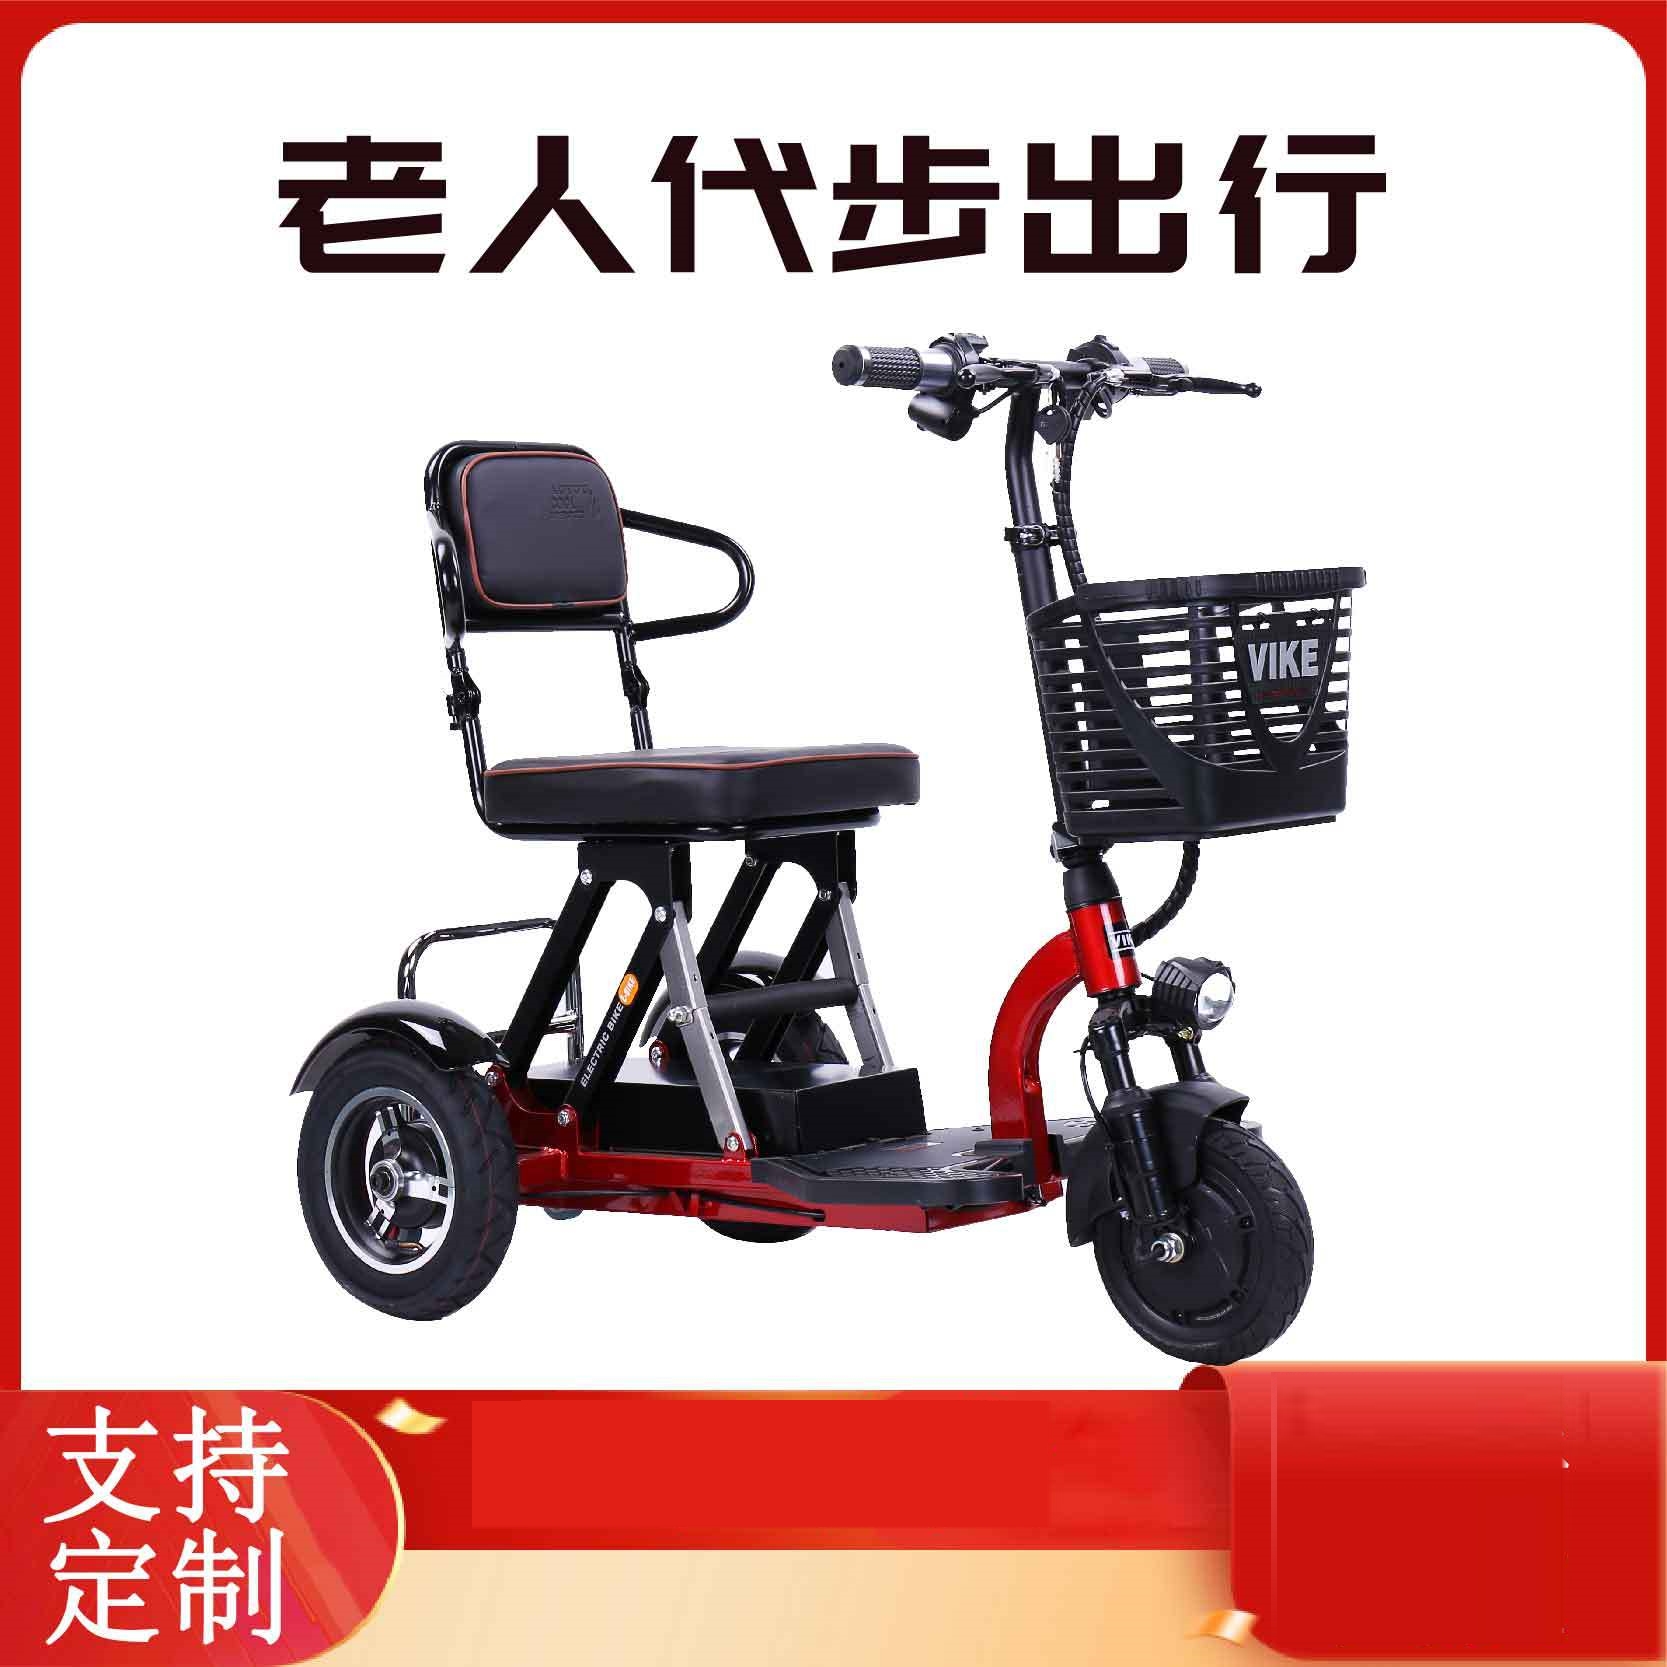 超轻便携小型折叠老年人家用电动三轮车迷你车载残疾人三轮电瓶车